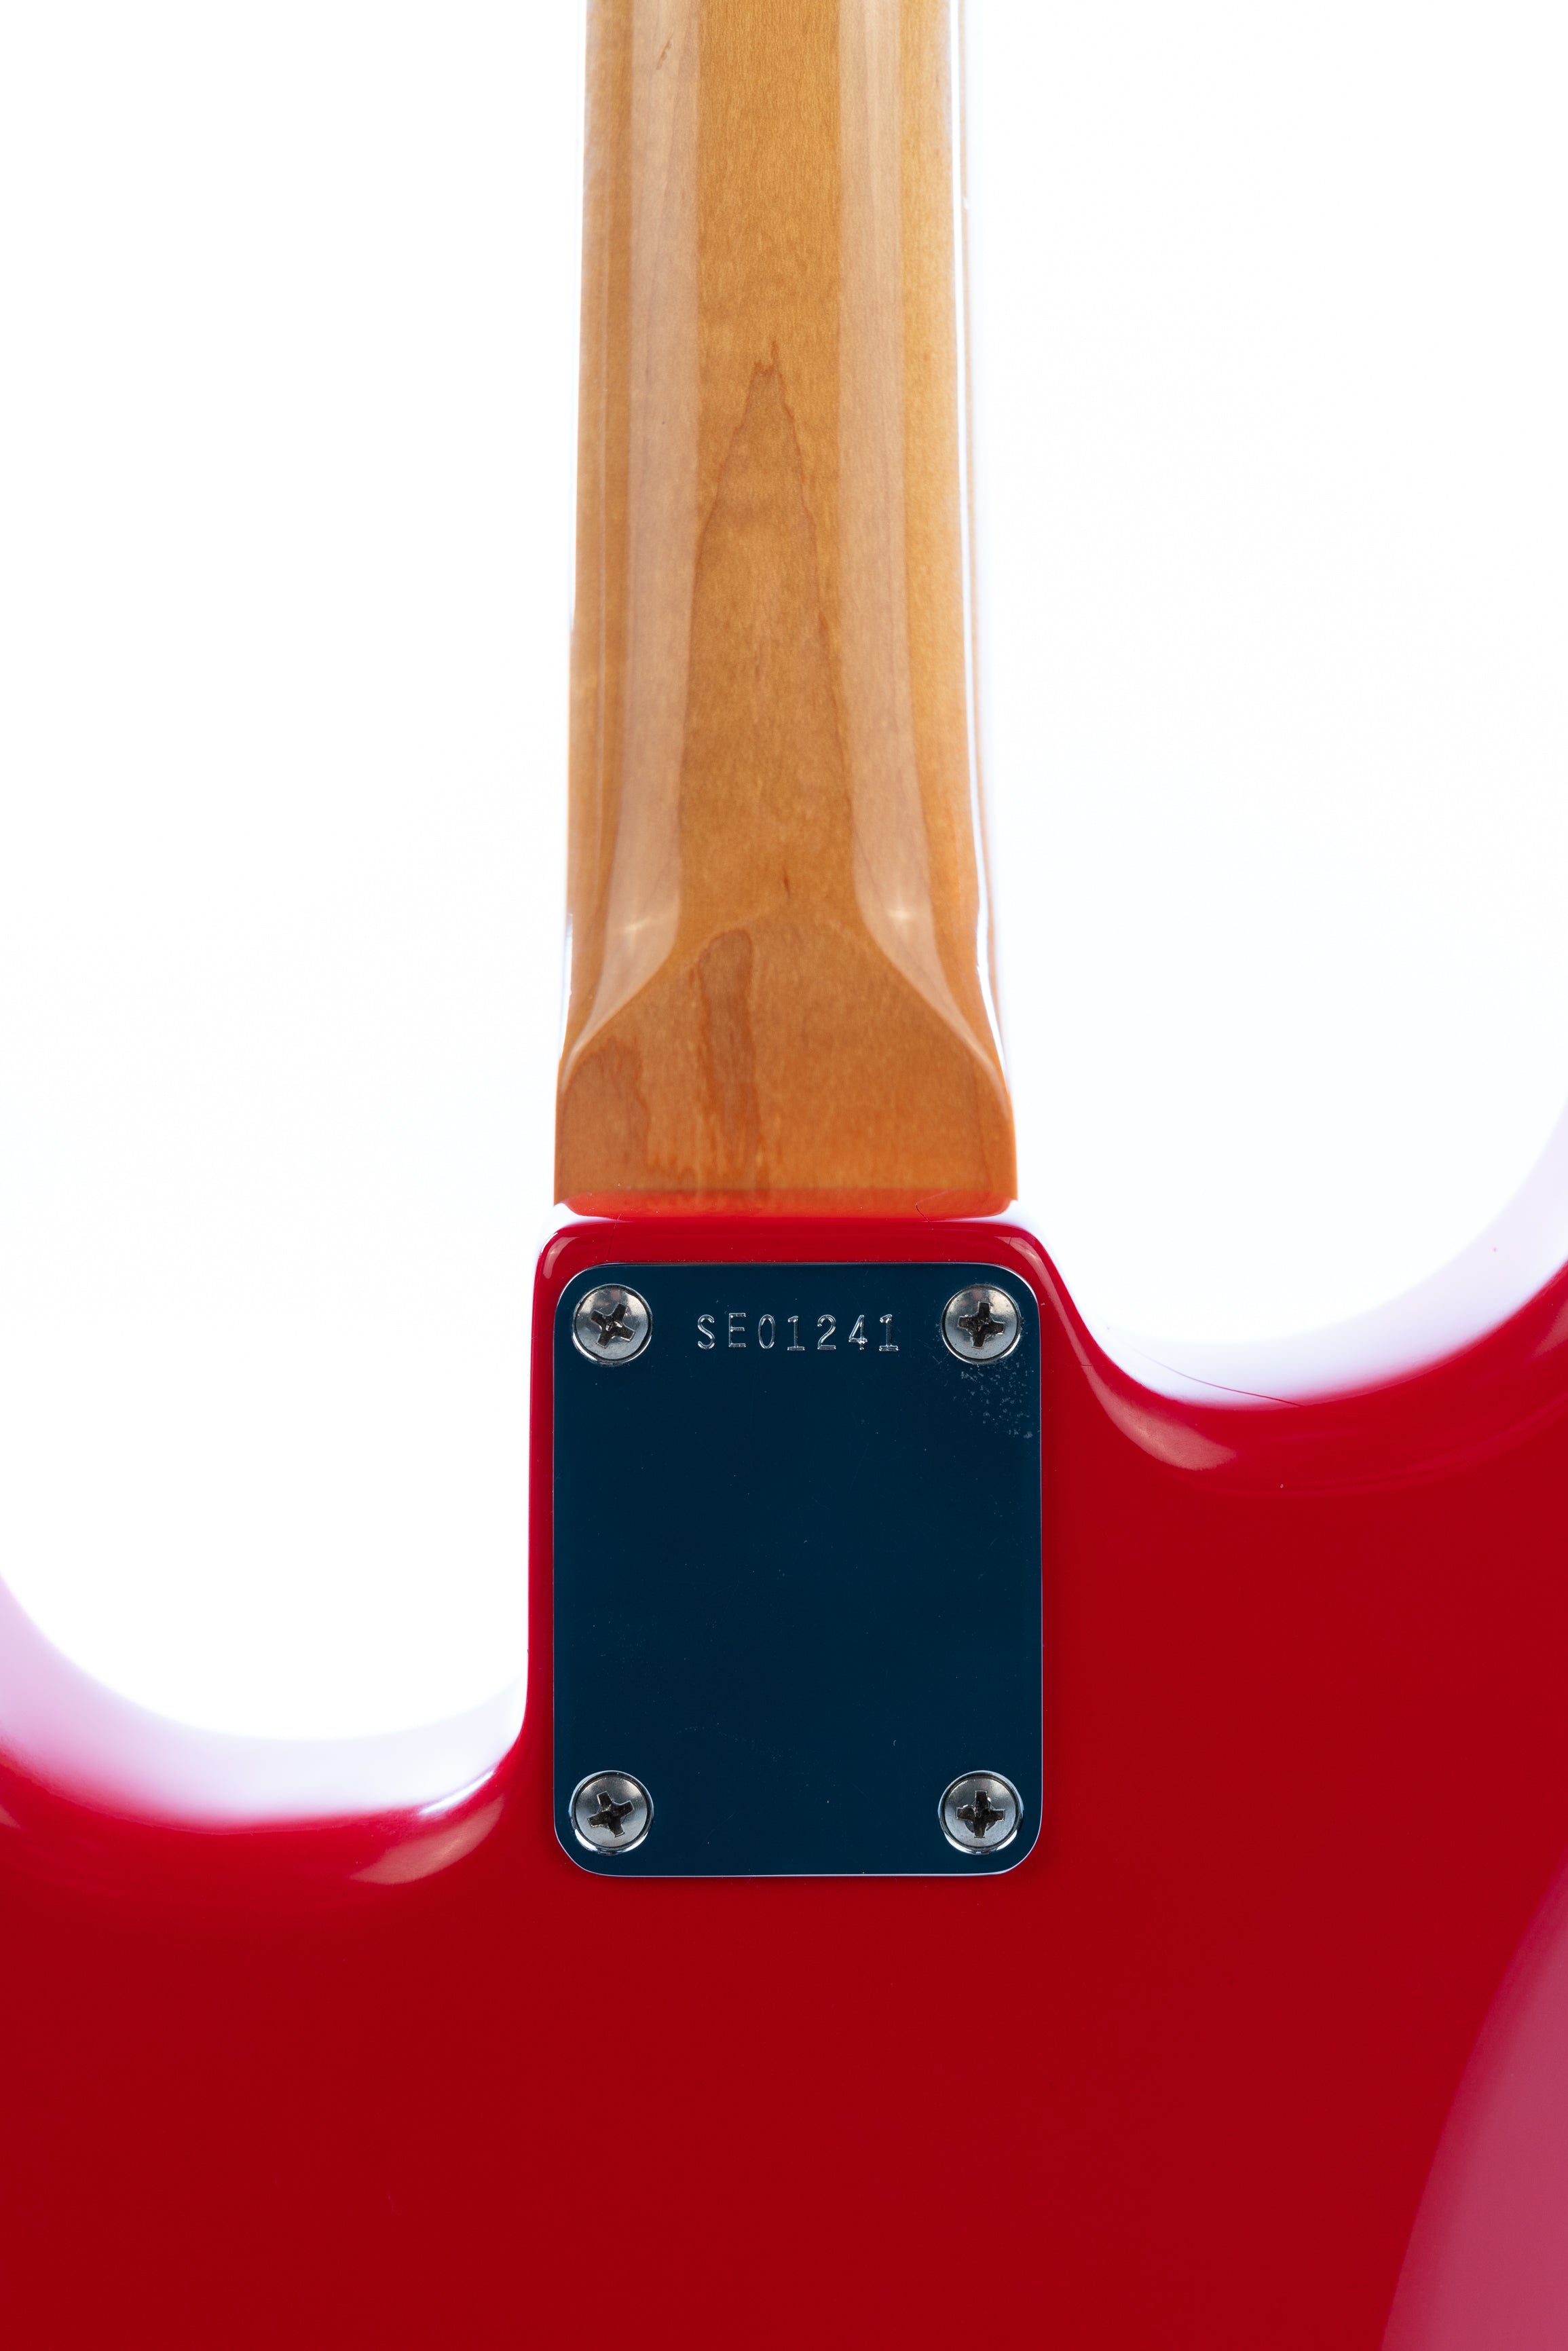 2005 Fender Mark Knopfler Artist Series Stratocaster in Hot Rod Red